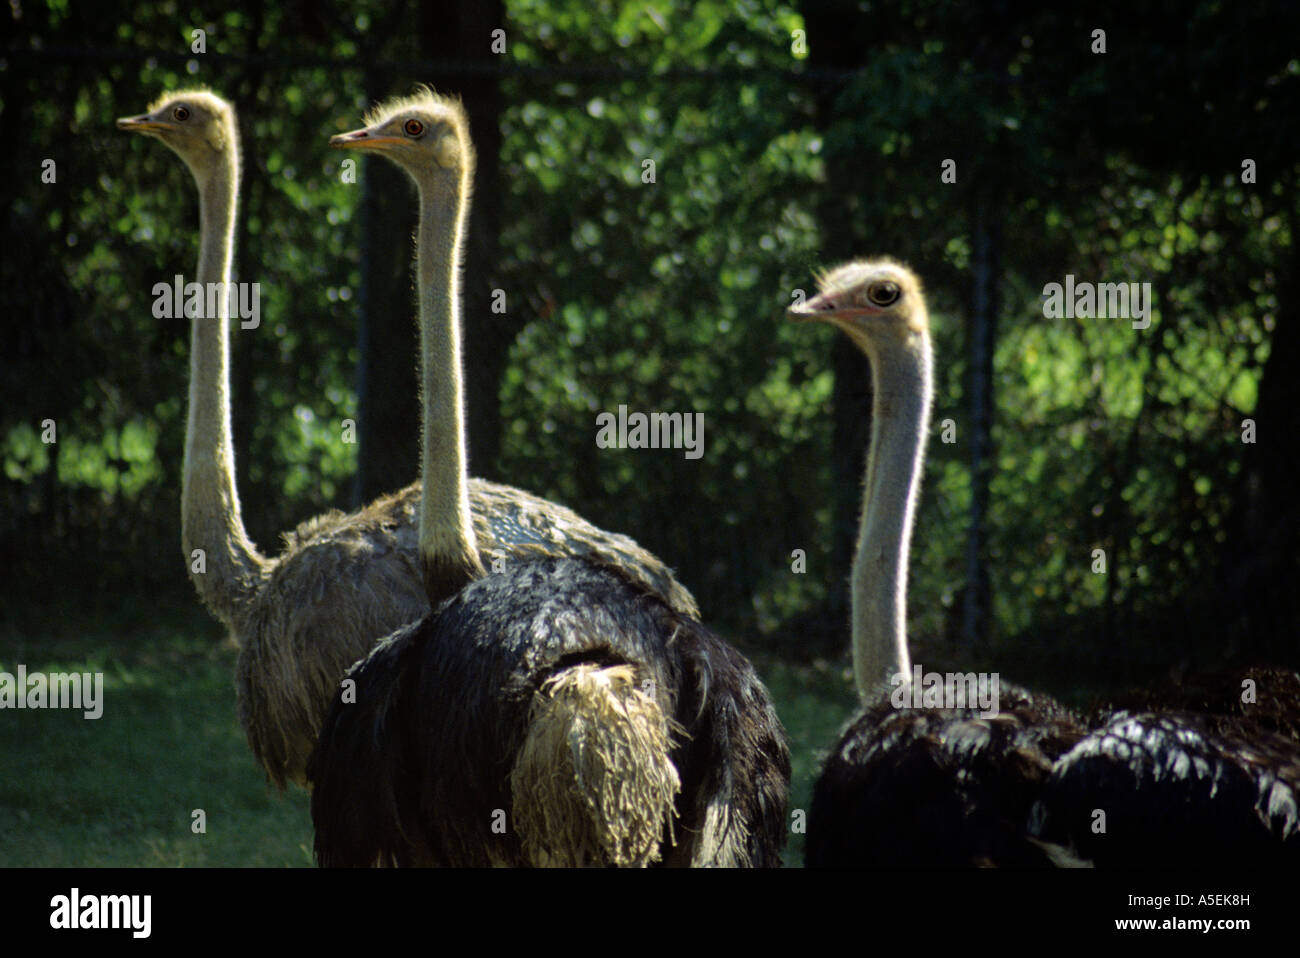 Un trio d'autruches, Struthio camelus, un oiseau d'Afrique, d'échanges avec les regards curieux des visiteurs du zoo. Banque D'Images